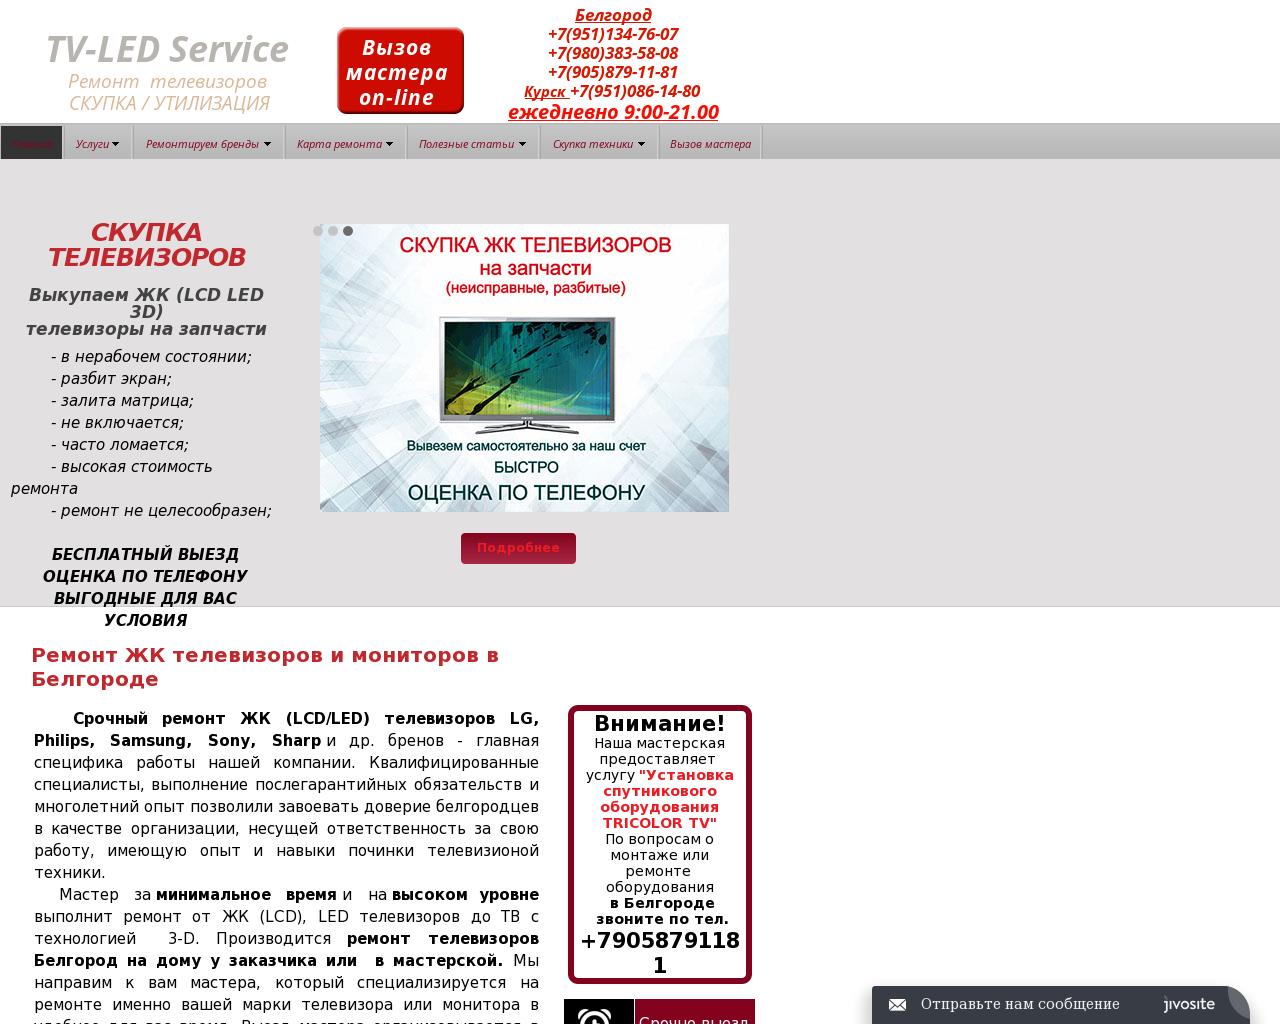 Изображение сайта tv-ledservice.ru в разрешении 1280x1024